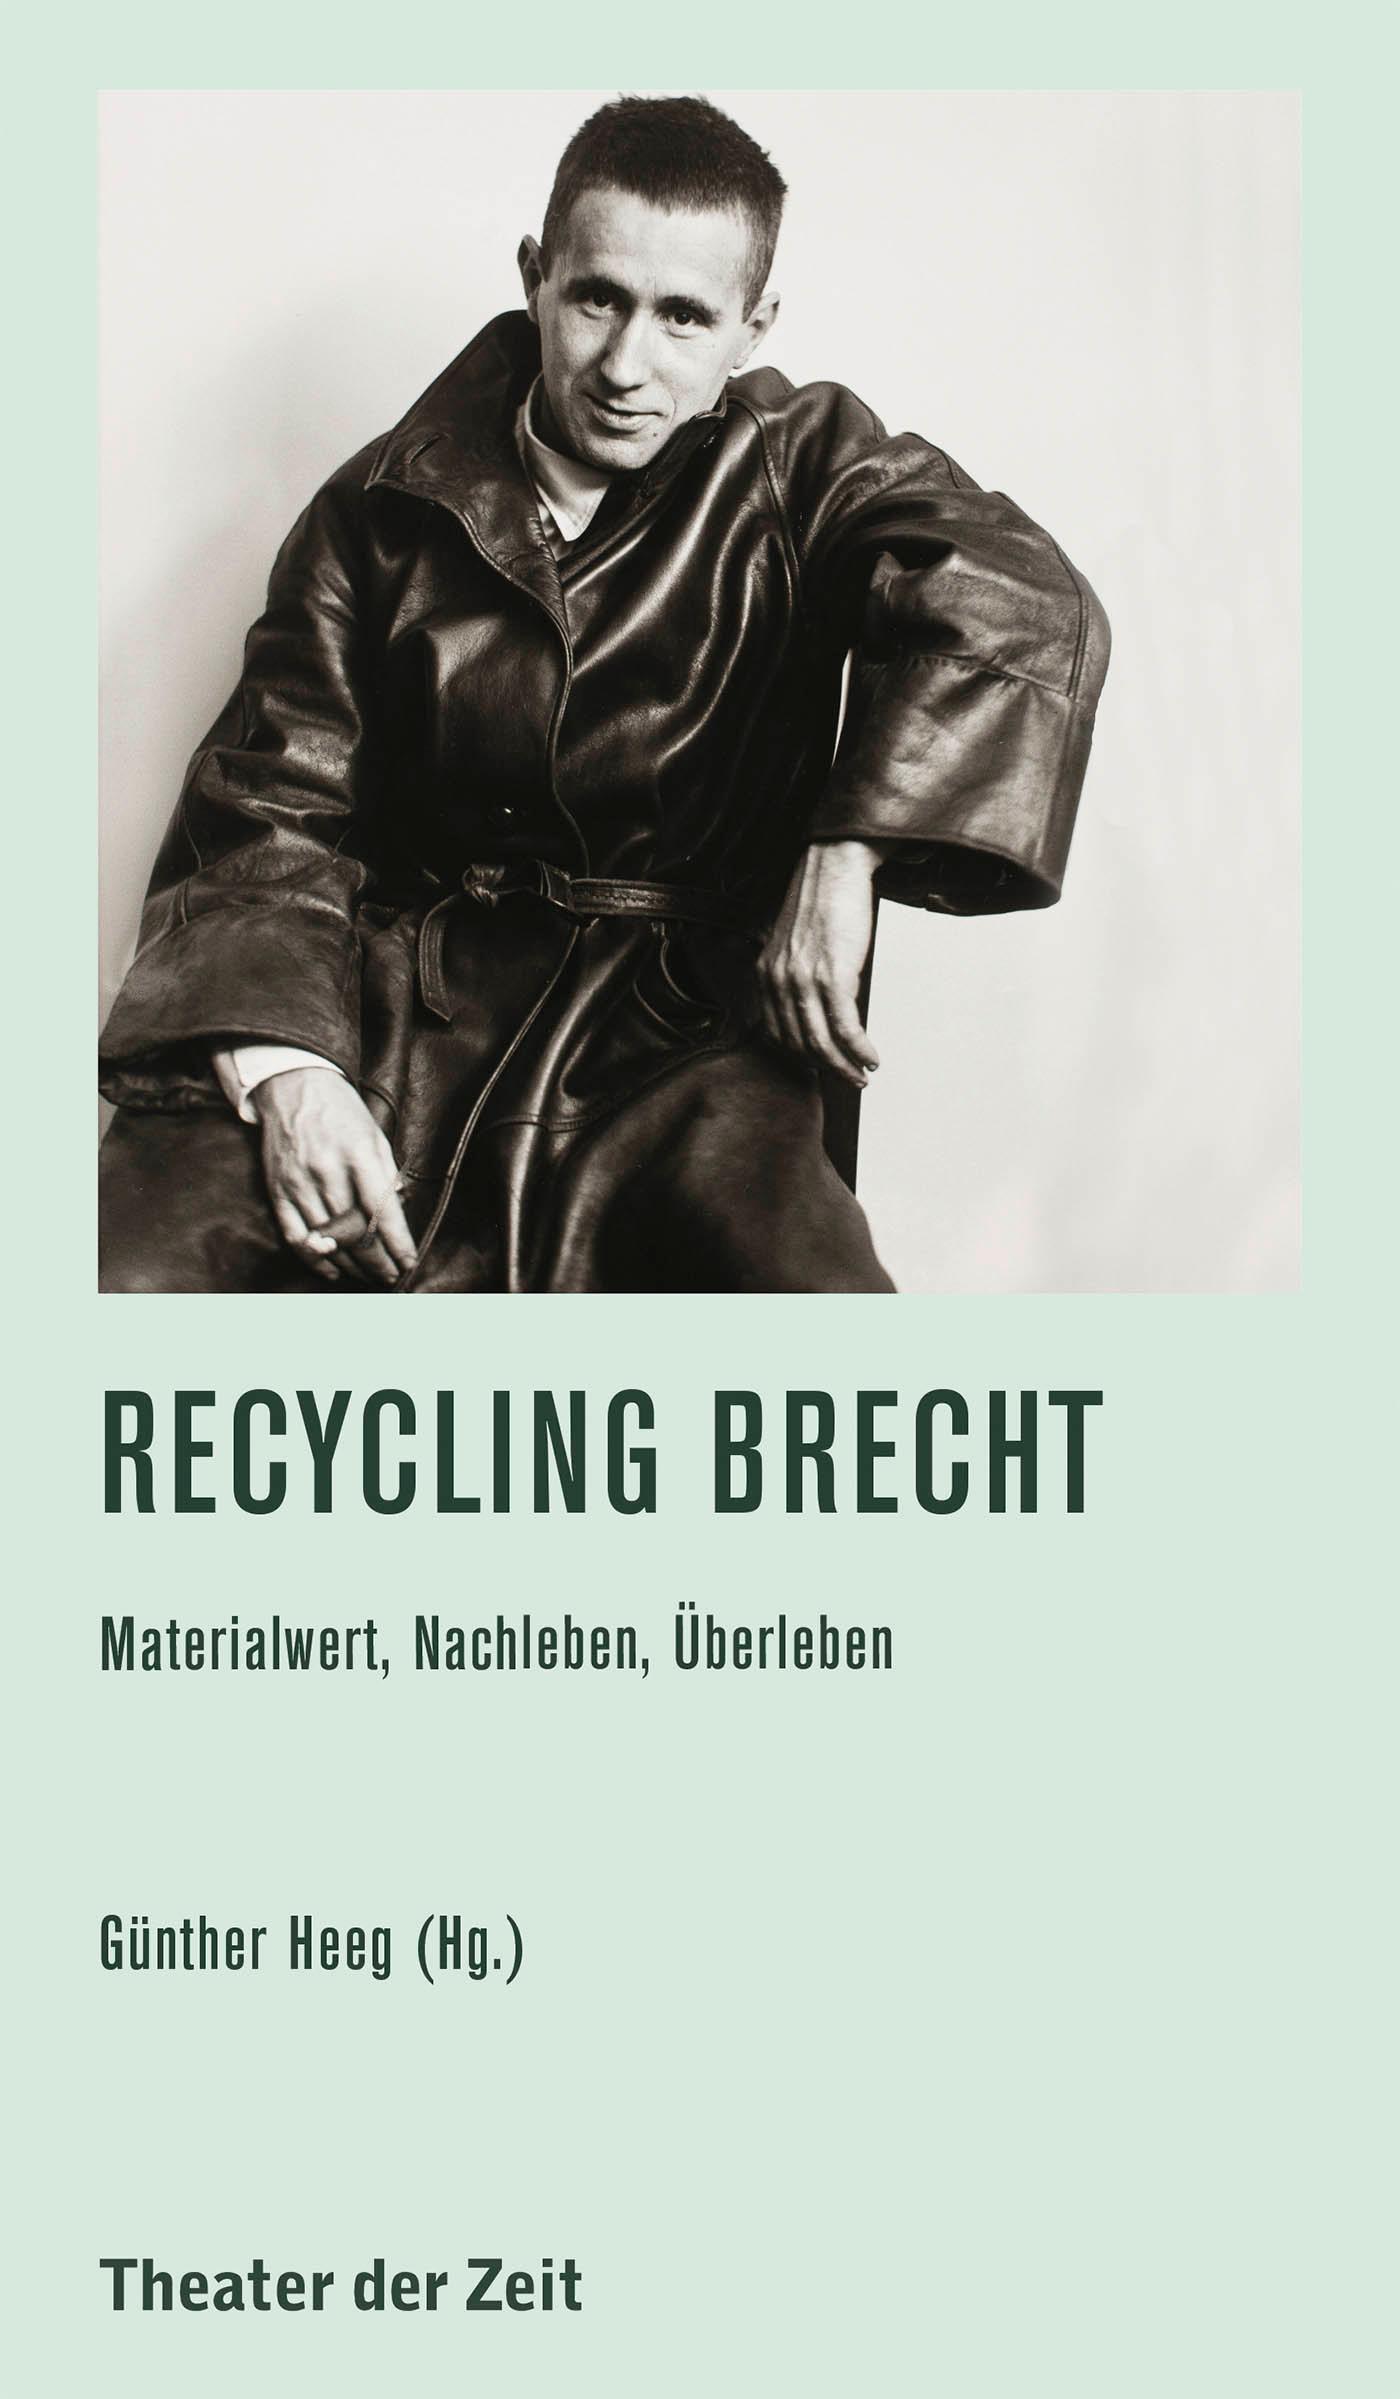 Recherchen 136 "Recycling Brecht"